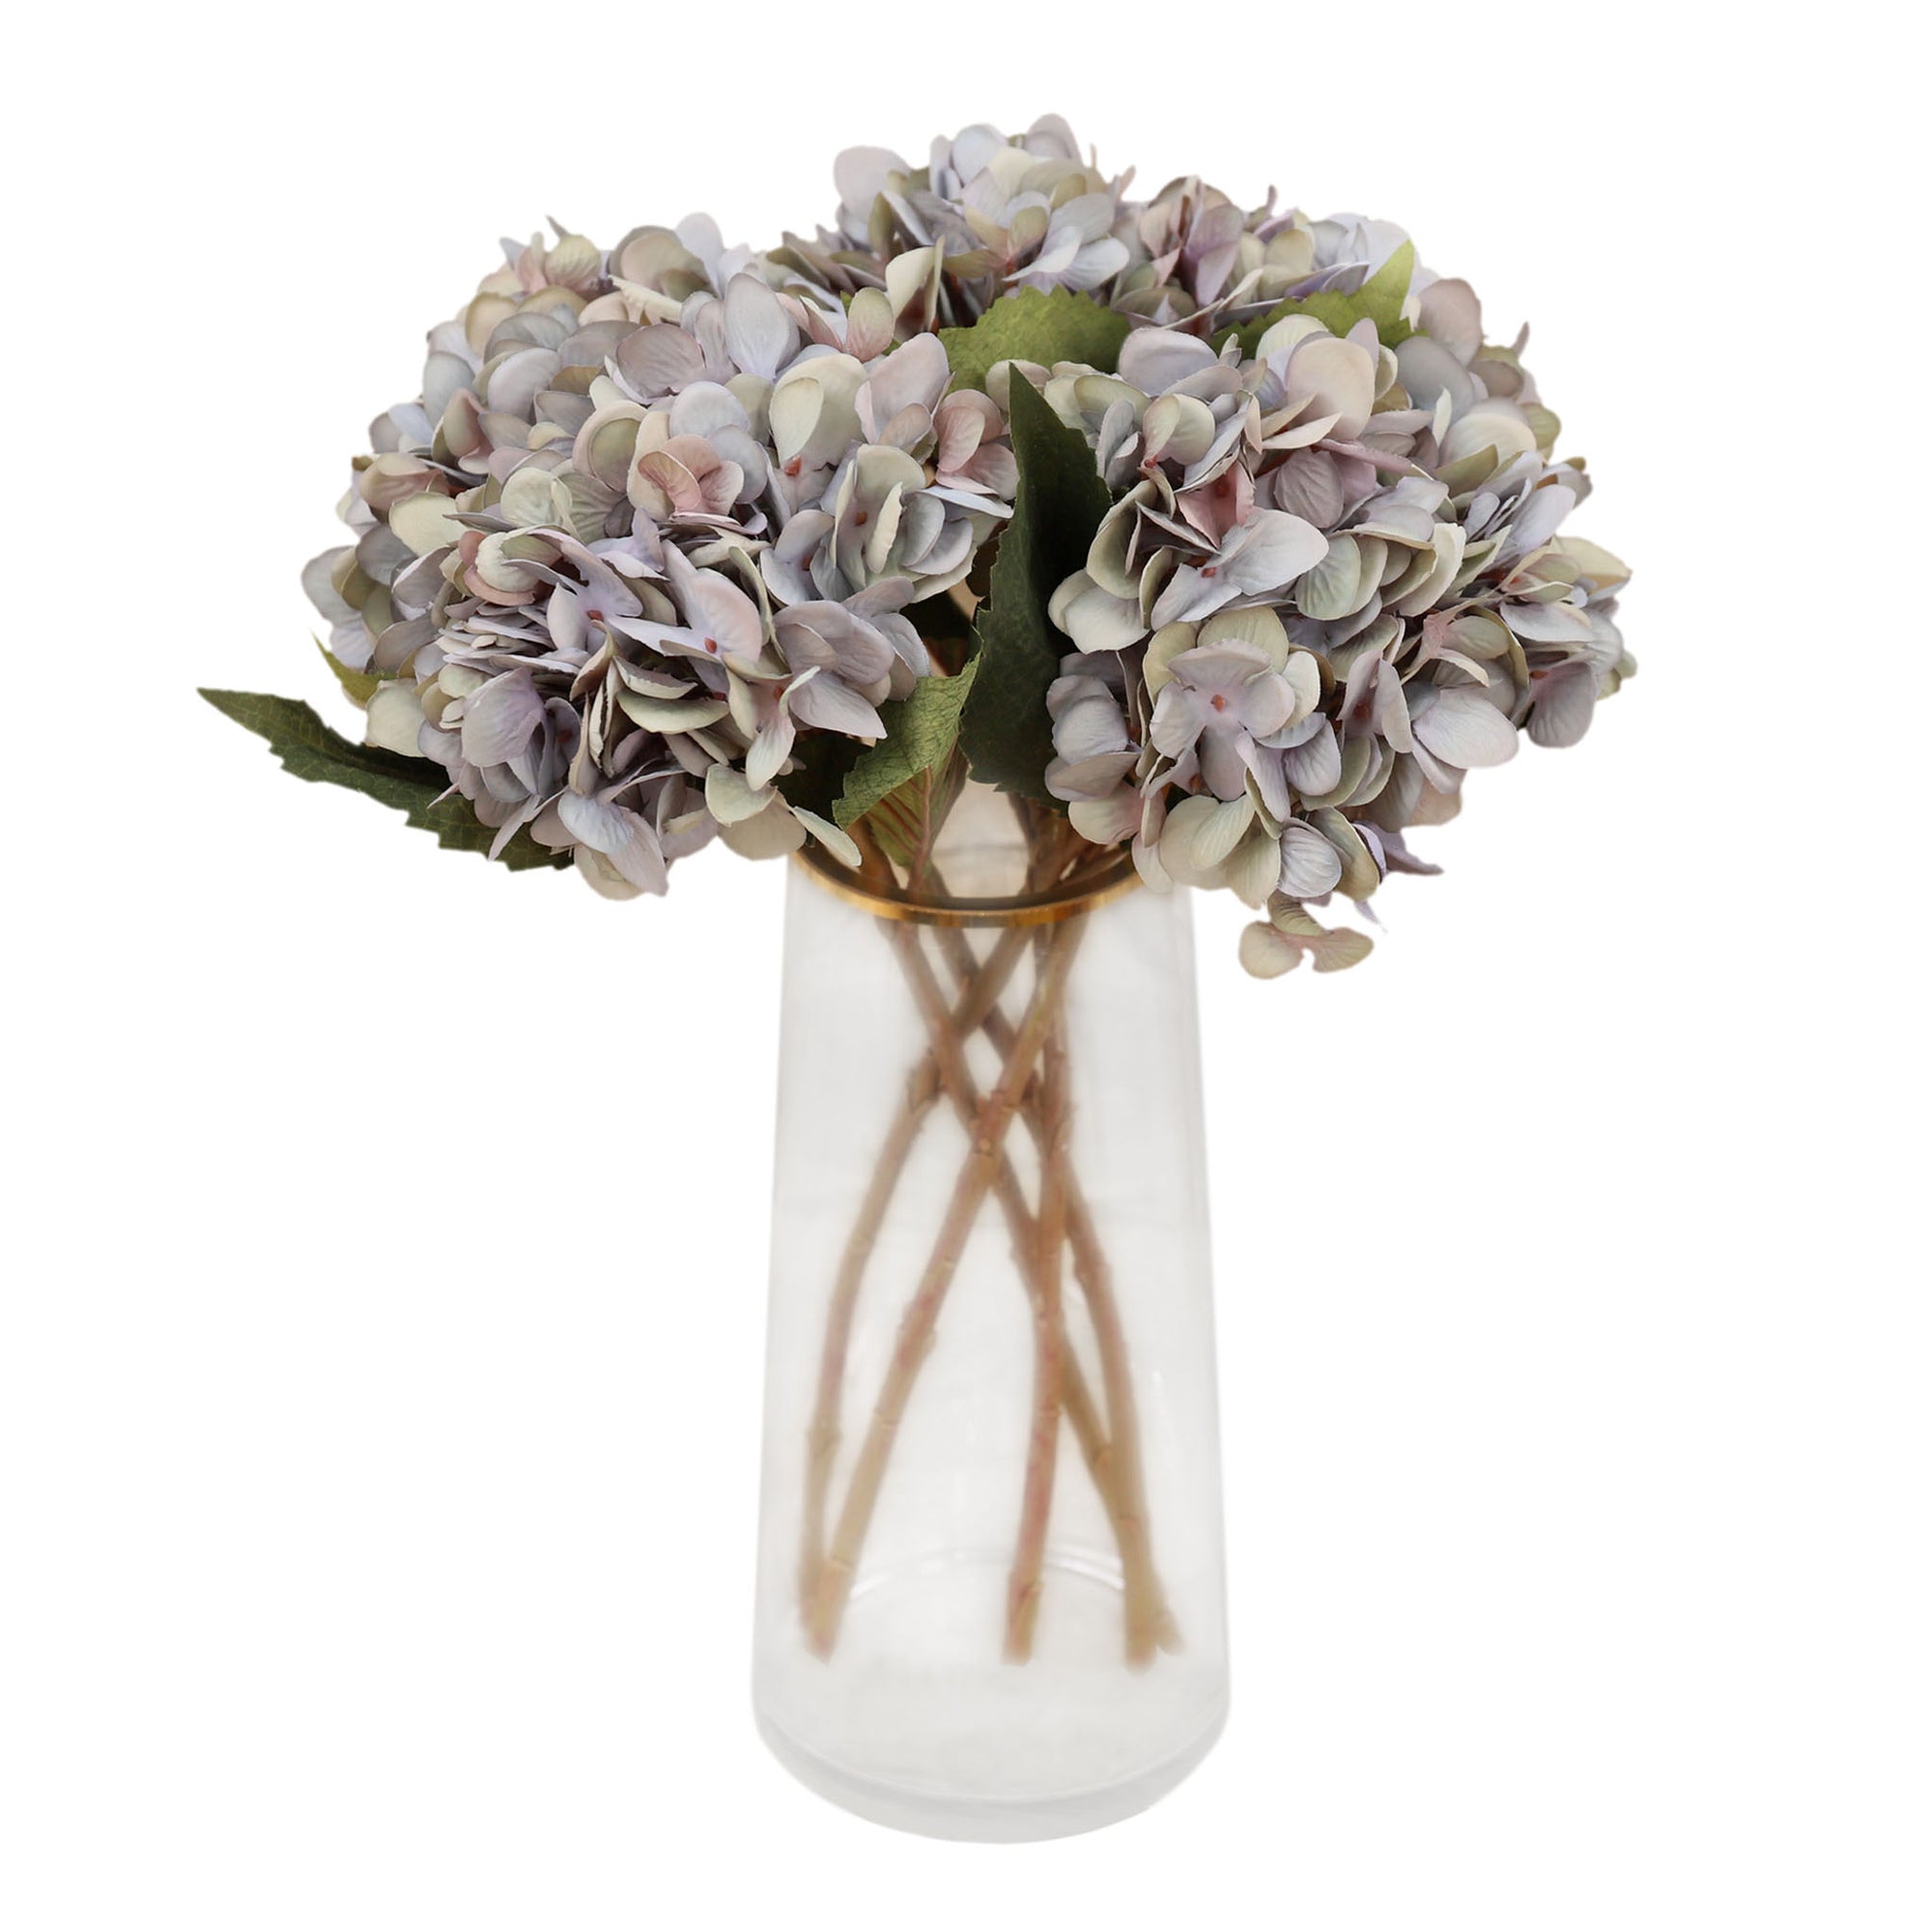 Faux Hydrangea Flowers Silk Flower Arrangements